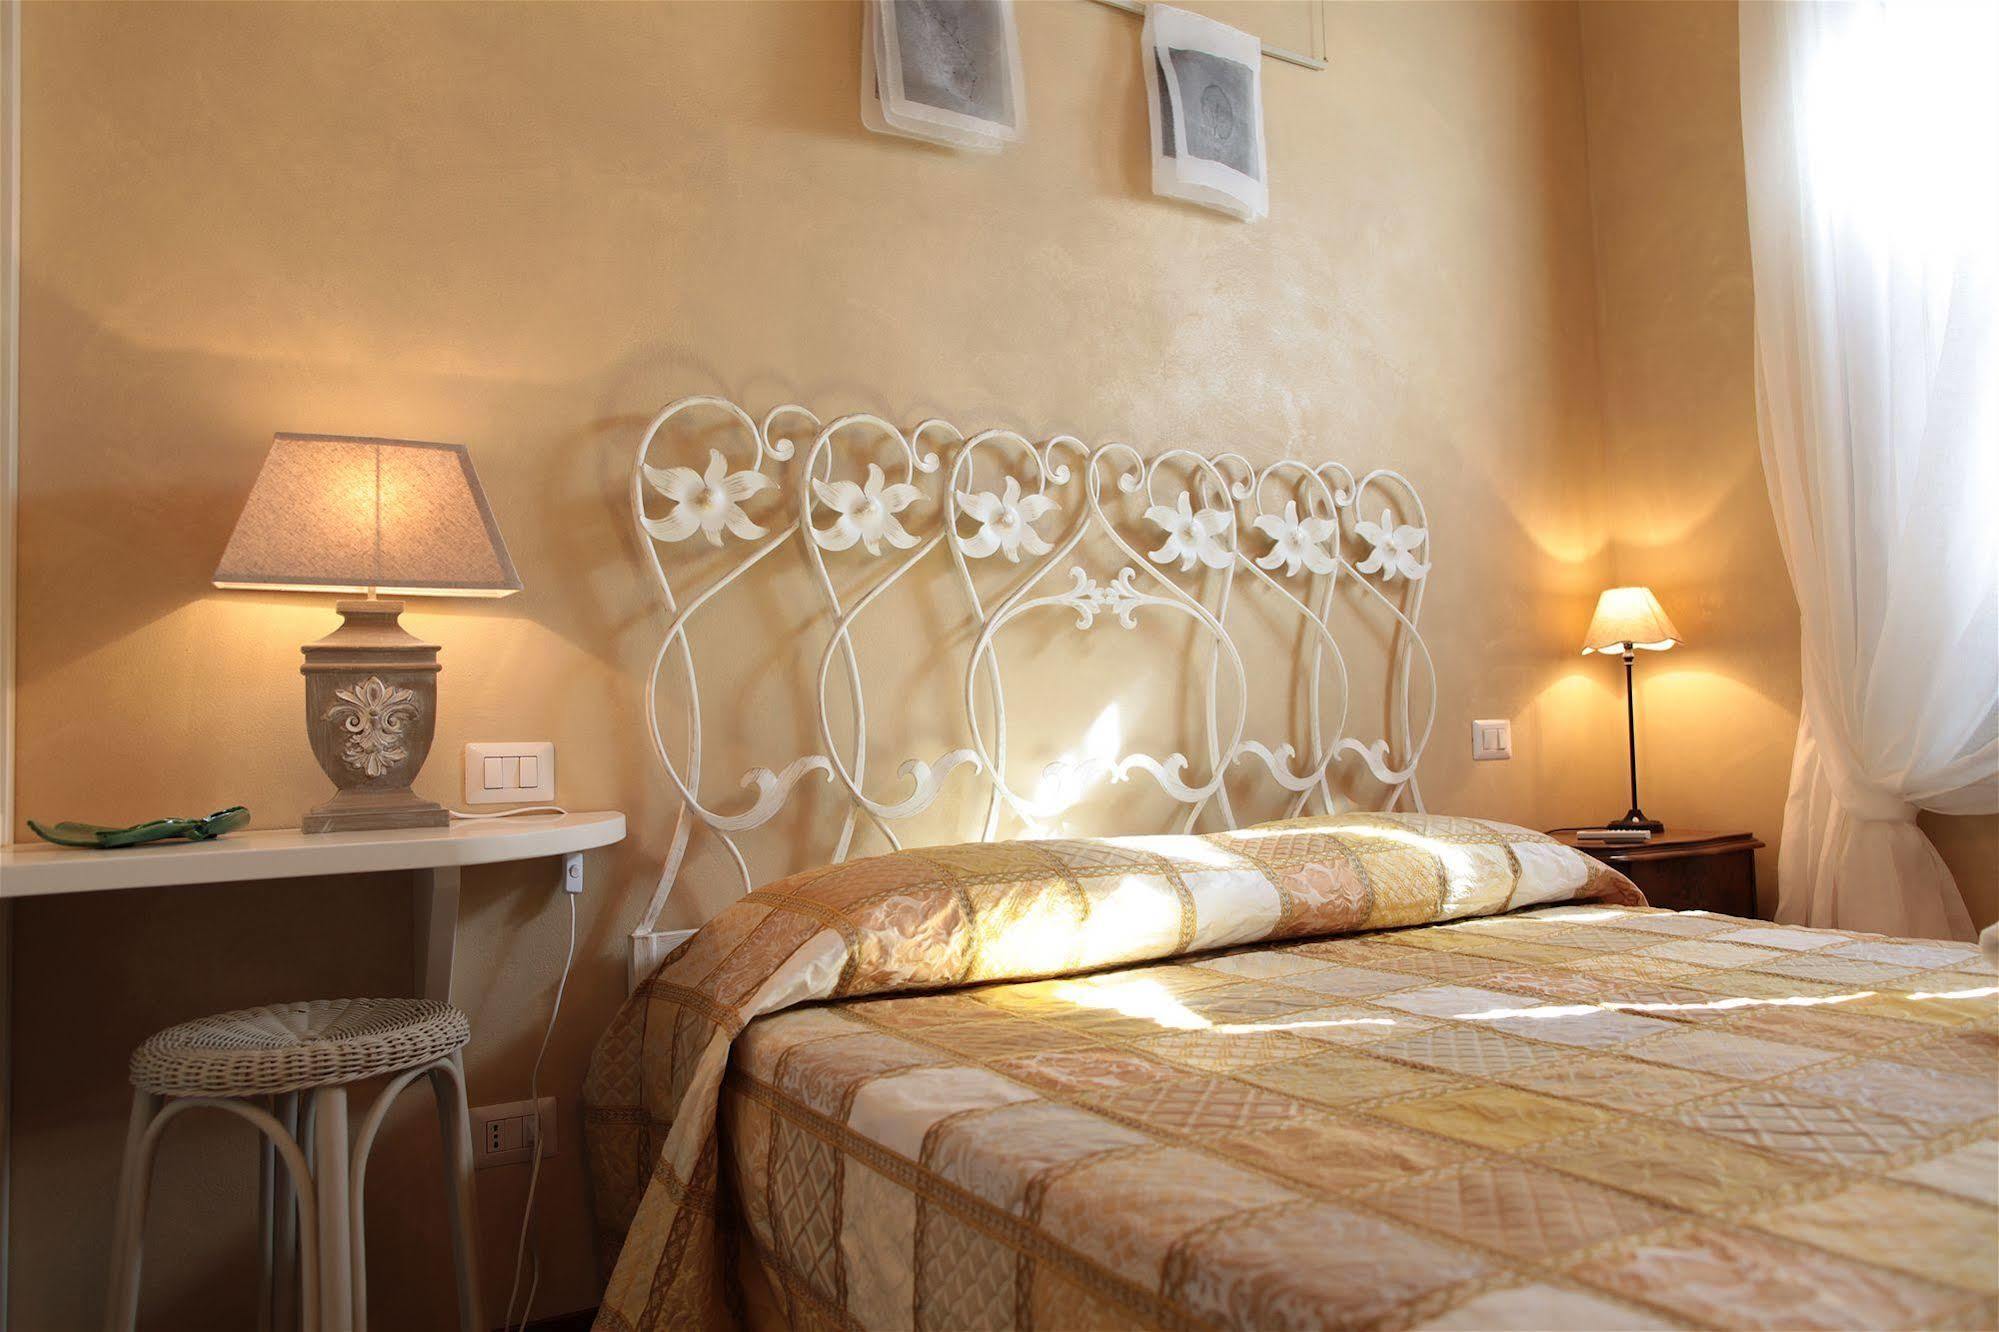 ヴェルッキオ Il Casale Dell'Arte - Le Case Antiche Bed & Breakfast エクステリア 写真